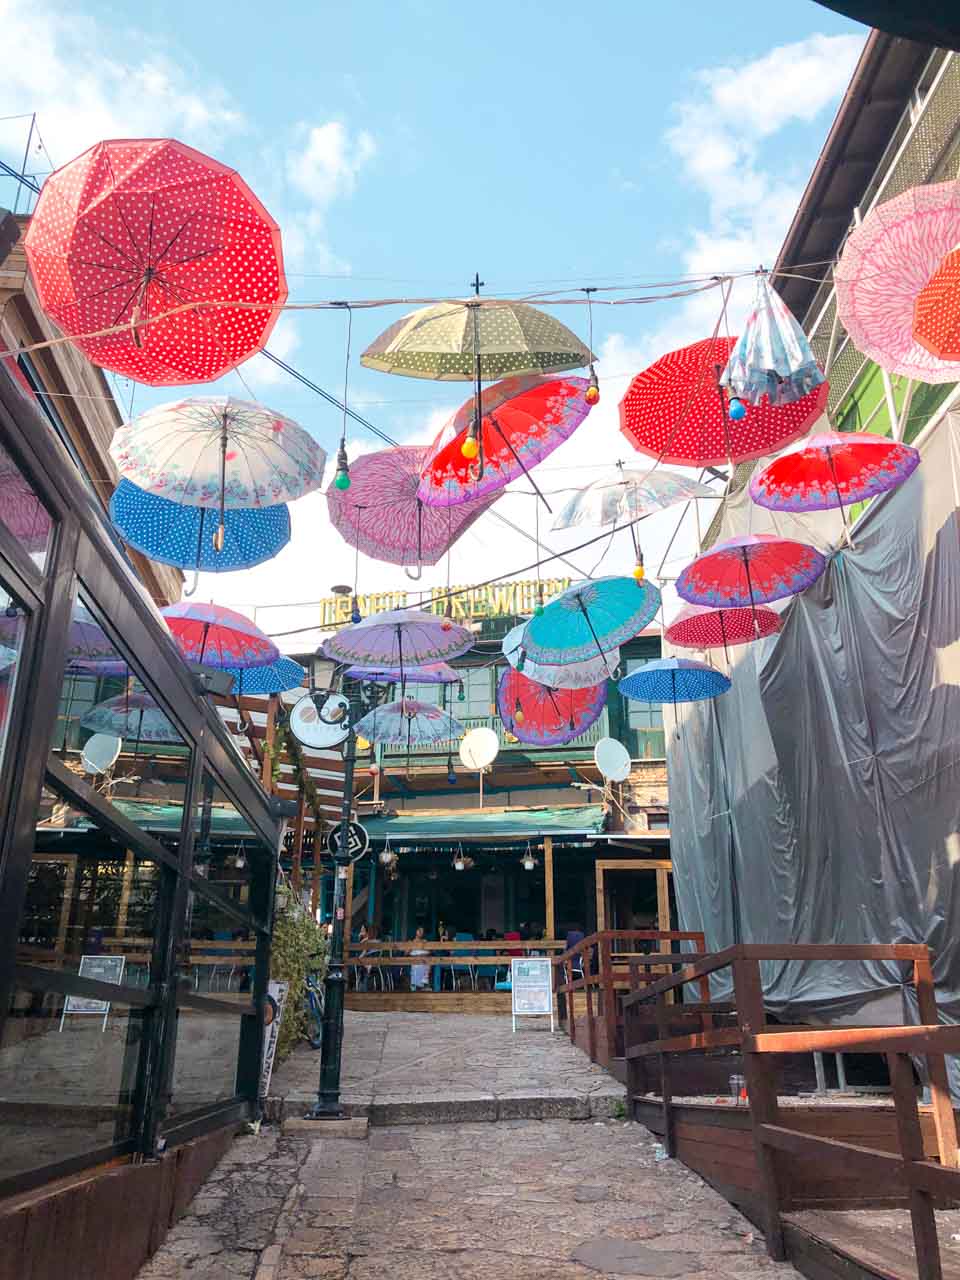 Colourful umbrellas hanging between buildings in the Old Bazaar in Skopje